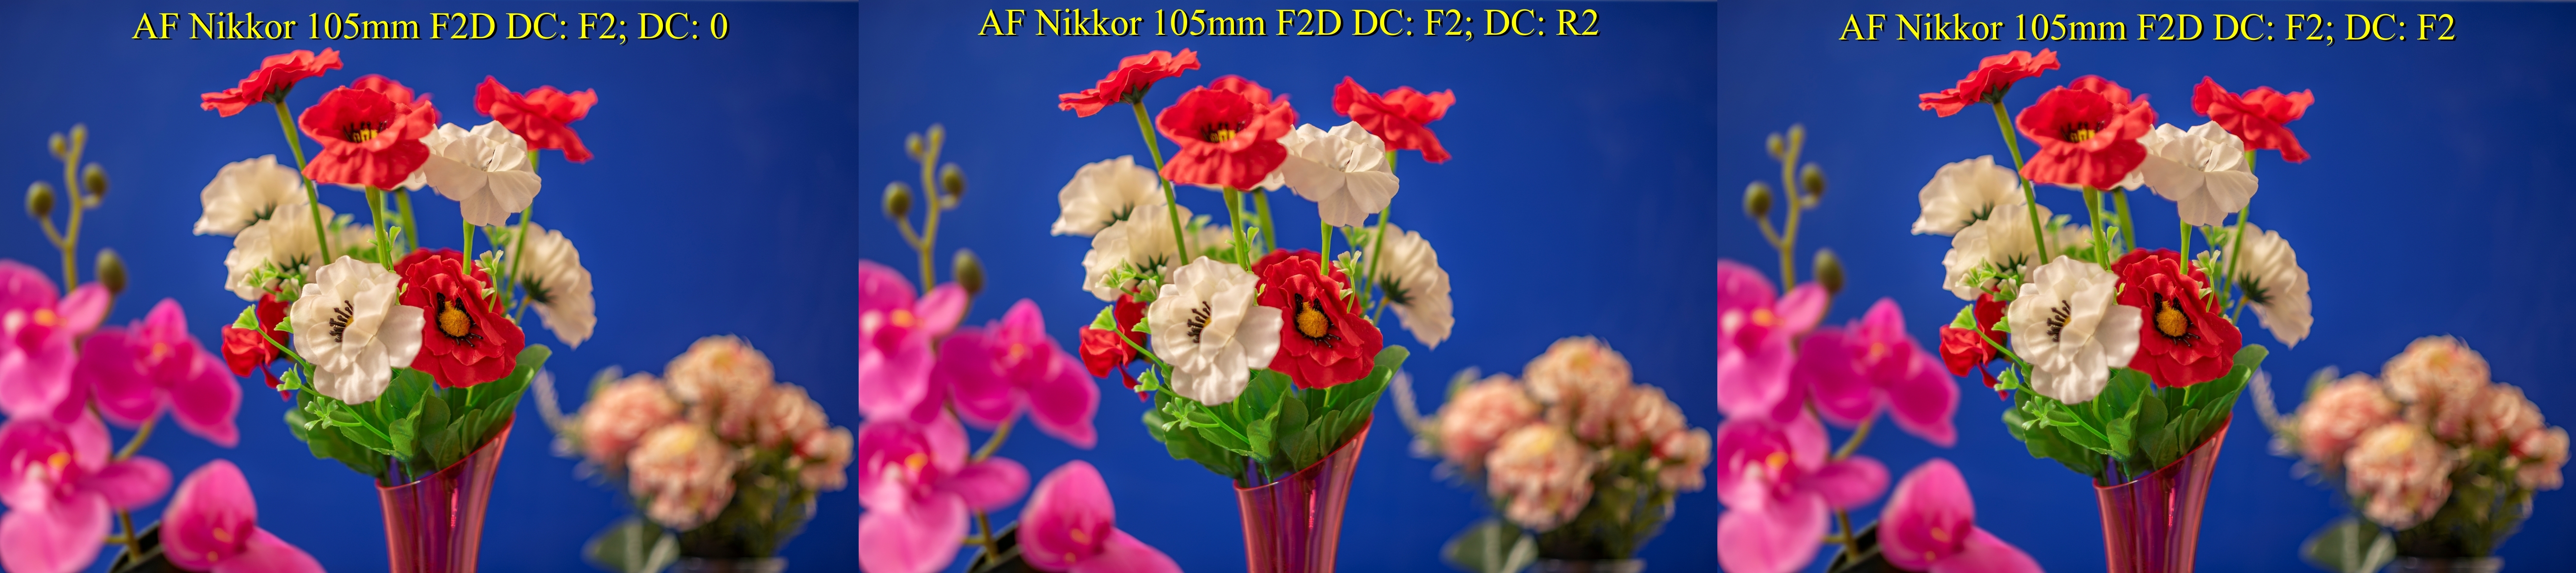 AF Nikkor 105mm F2D DC C006617 F2 DC 0 Side Flowers